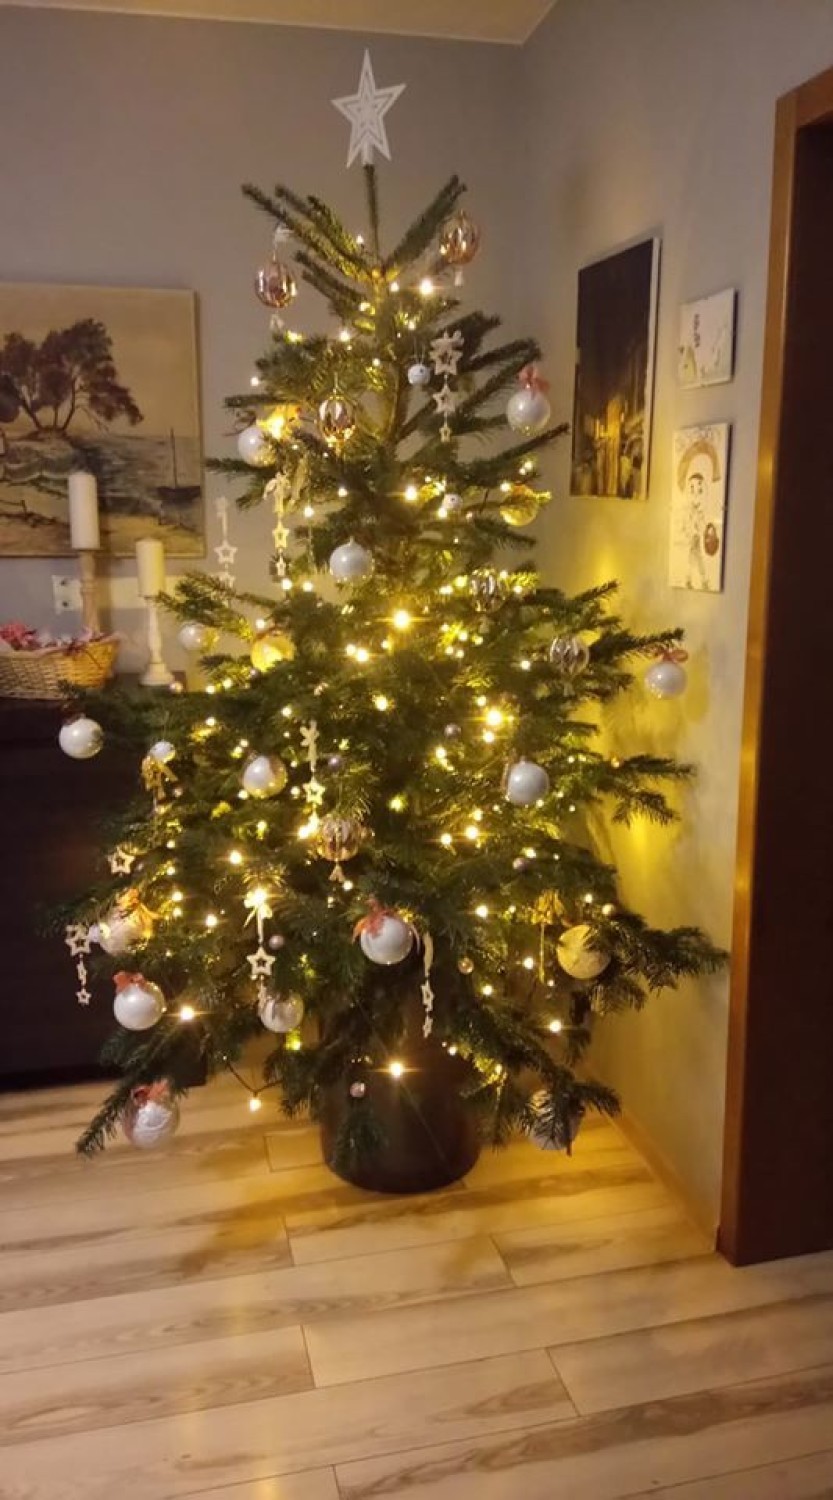 Sycowianie pokazali swoje świąteczne drzewka. Zobaczcie piękne choinki (FOTO)